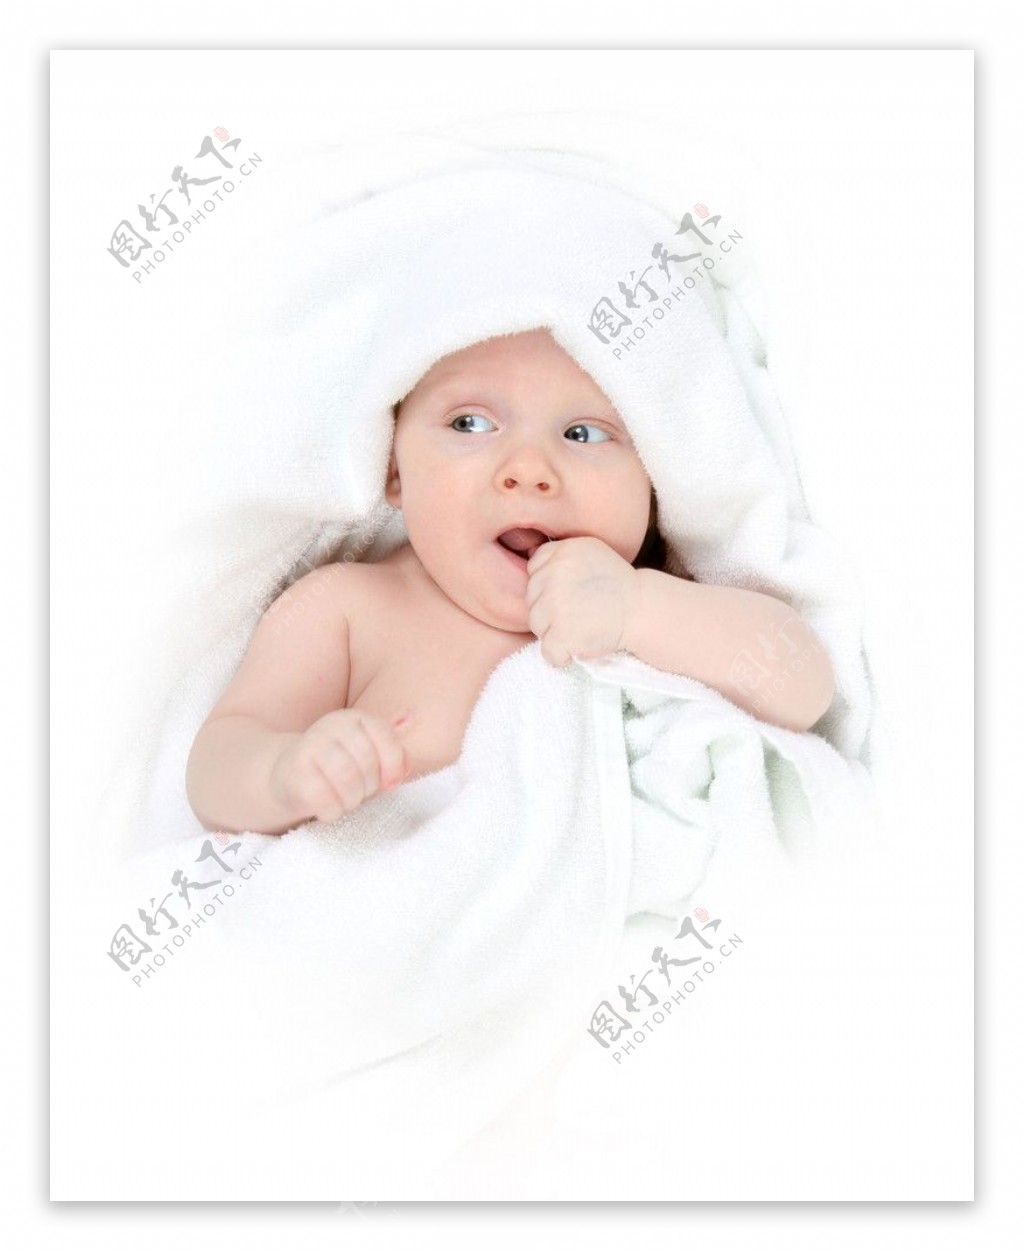 毛巾包着的婴儿图片